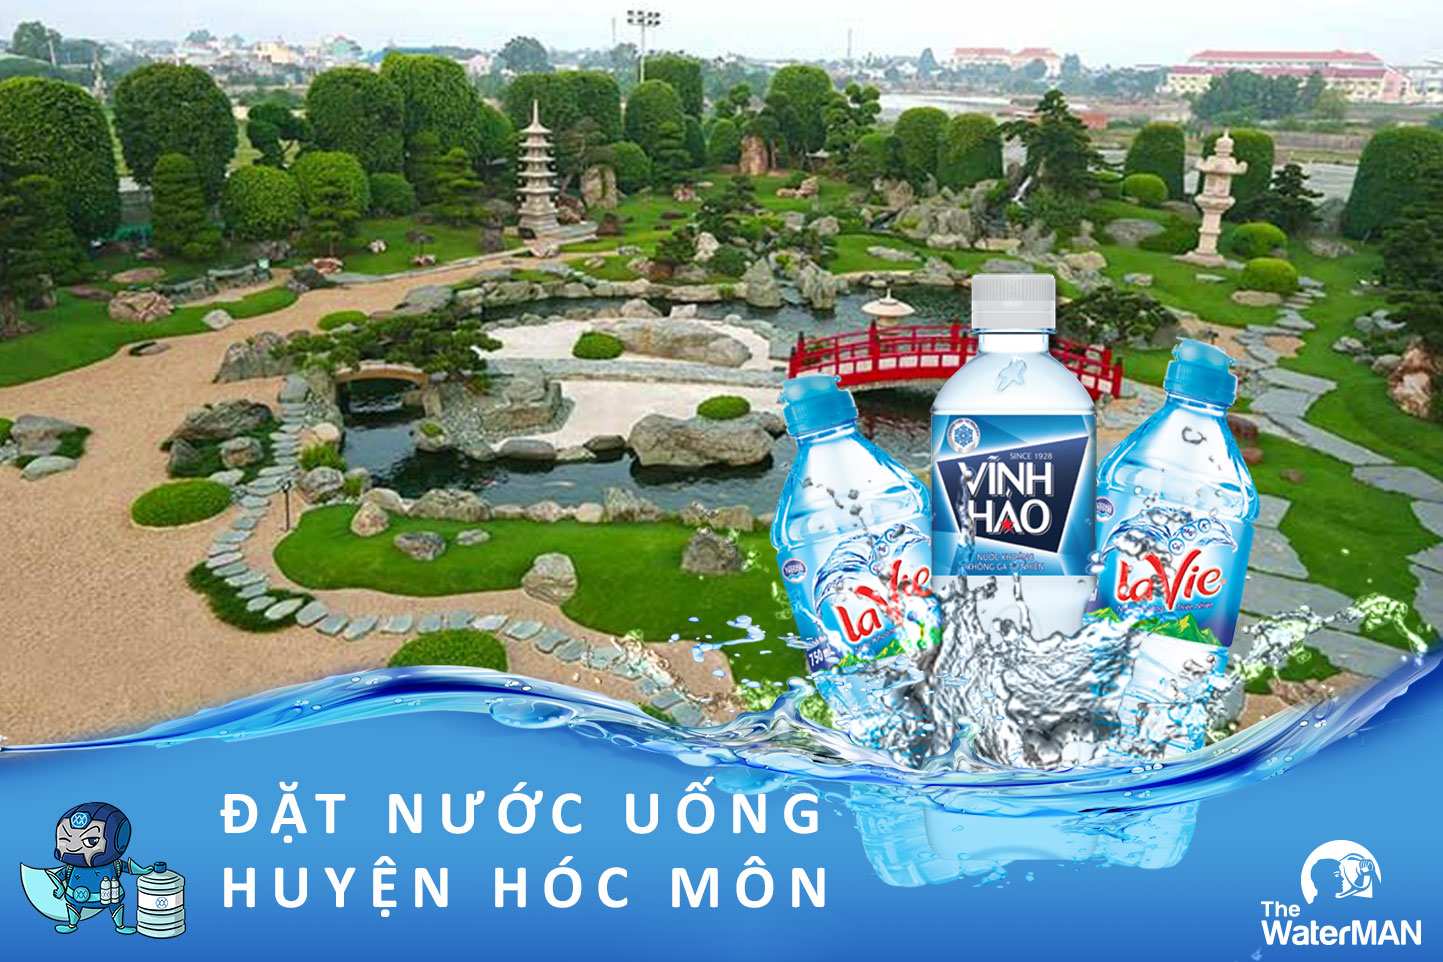 Đại lý giao nước khoáng huyện Hóc Môn